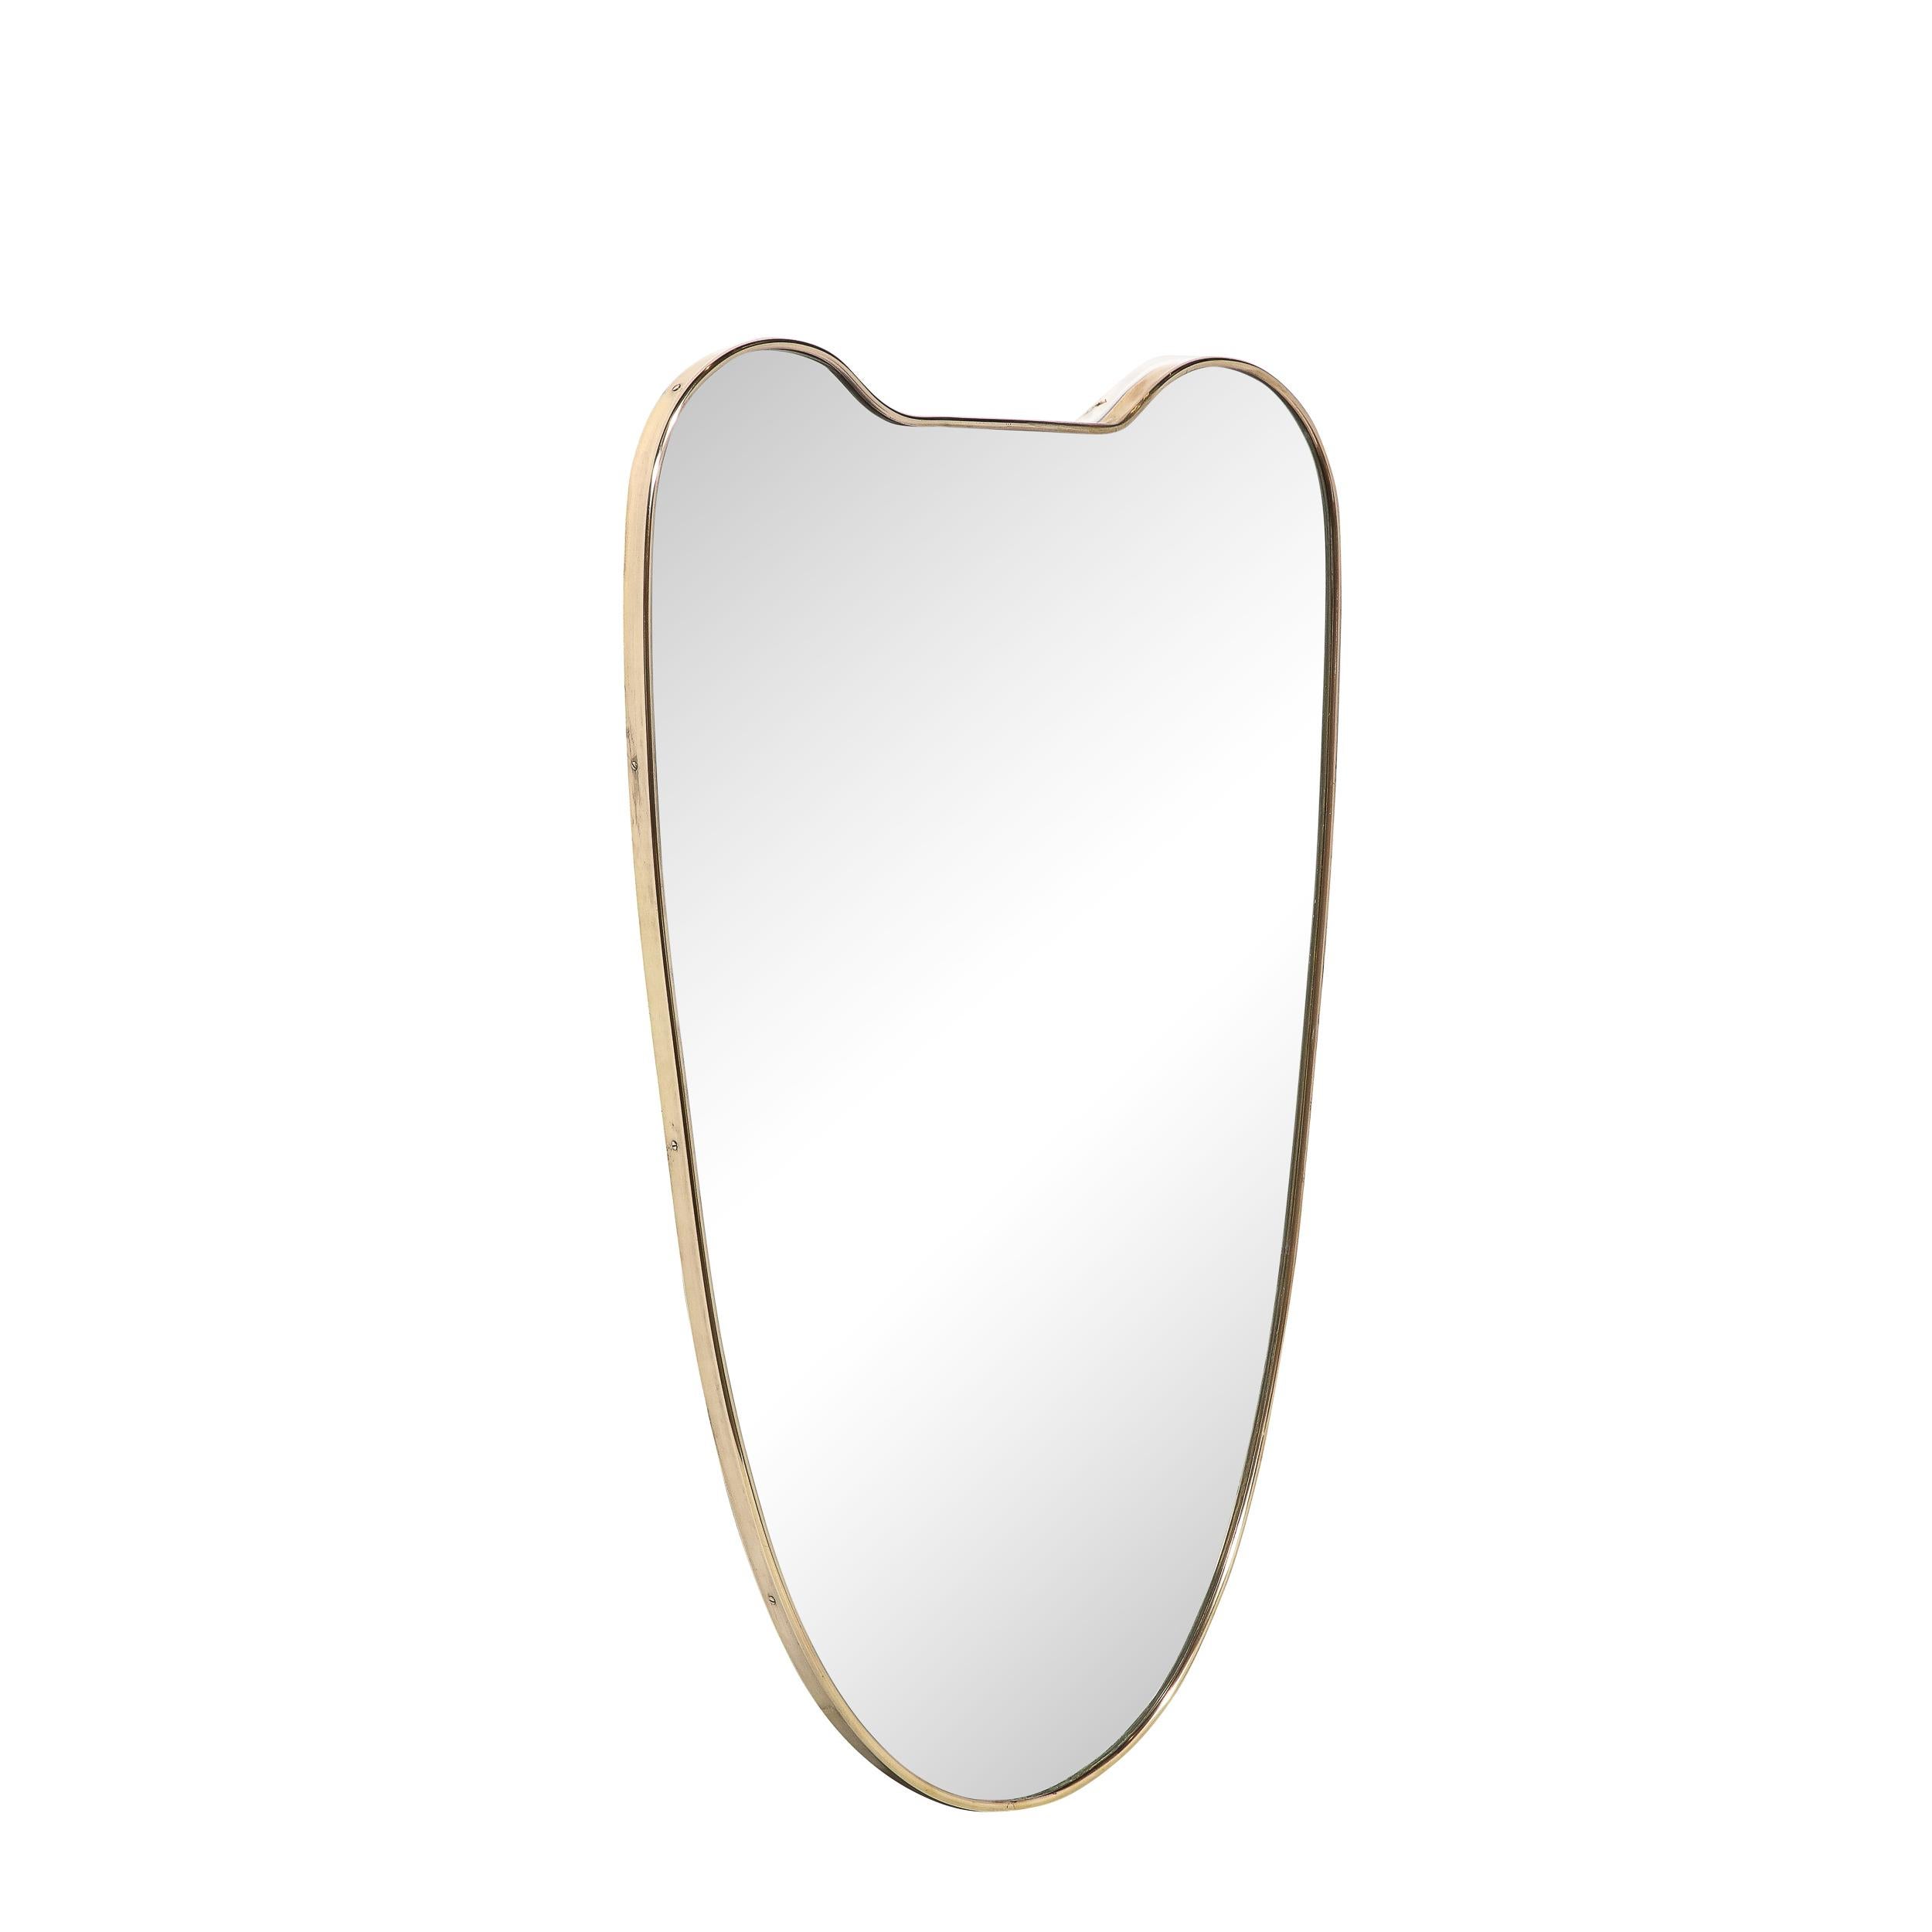 Ce miroir de forme bouclier en laiton, minimaliste et magnifiquement réalisé, est originaire d'Italie, vers 1960. Elle présente une superbe silhouette en forme d'écu héraldique, avec des coins supérieurs arrondis et une section inférieure joliment